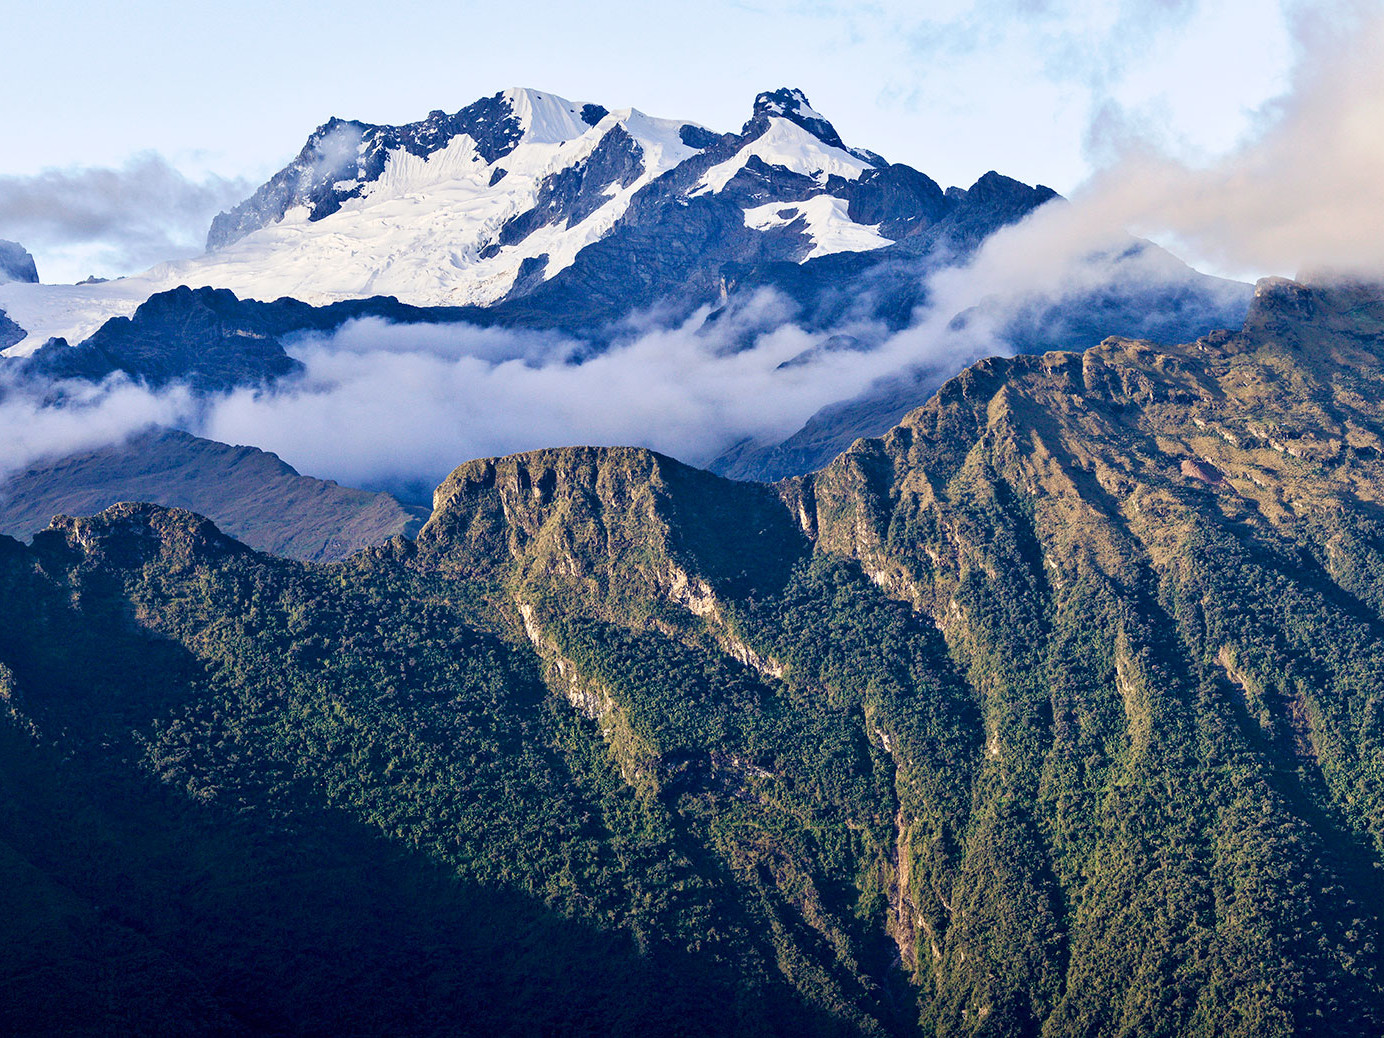 Kiunalla, una comunidad unida con los bosques andinos